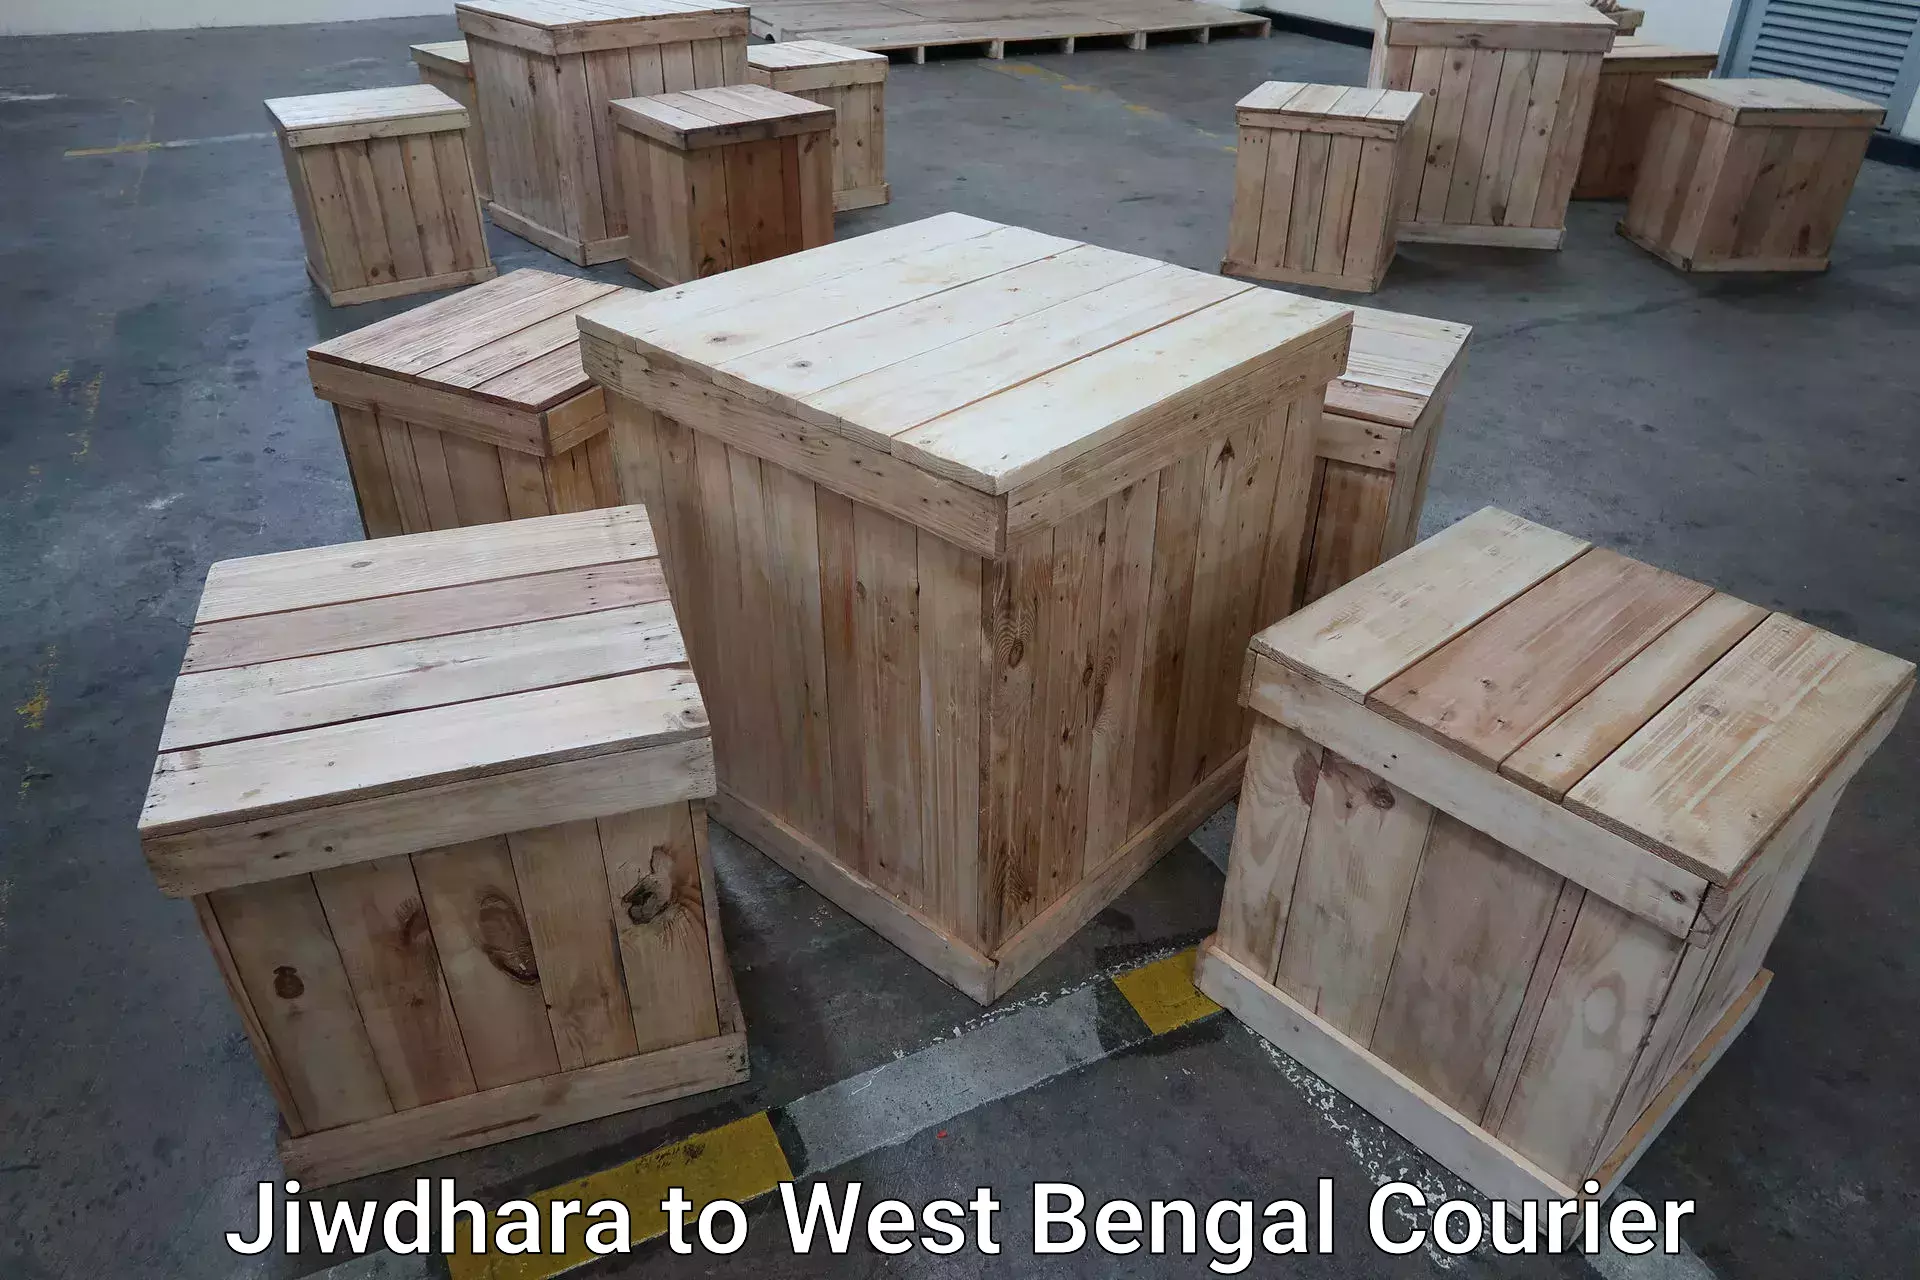 Baggage shipping schedule Jiwdhara to West Bengal